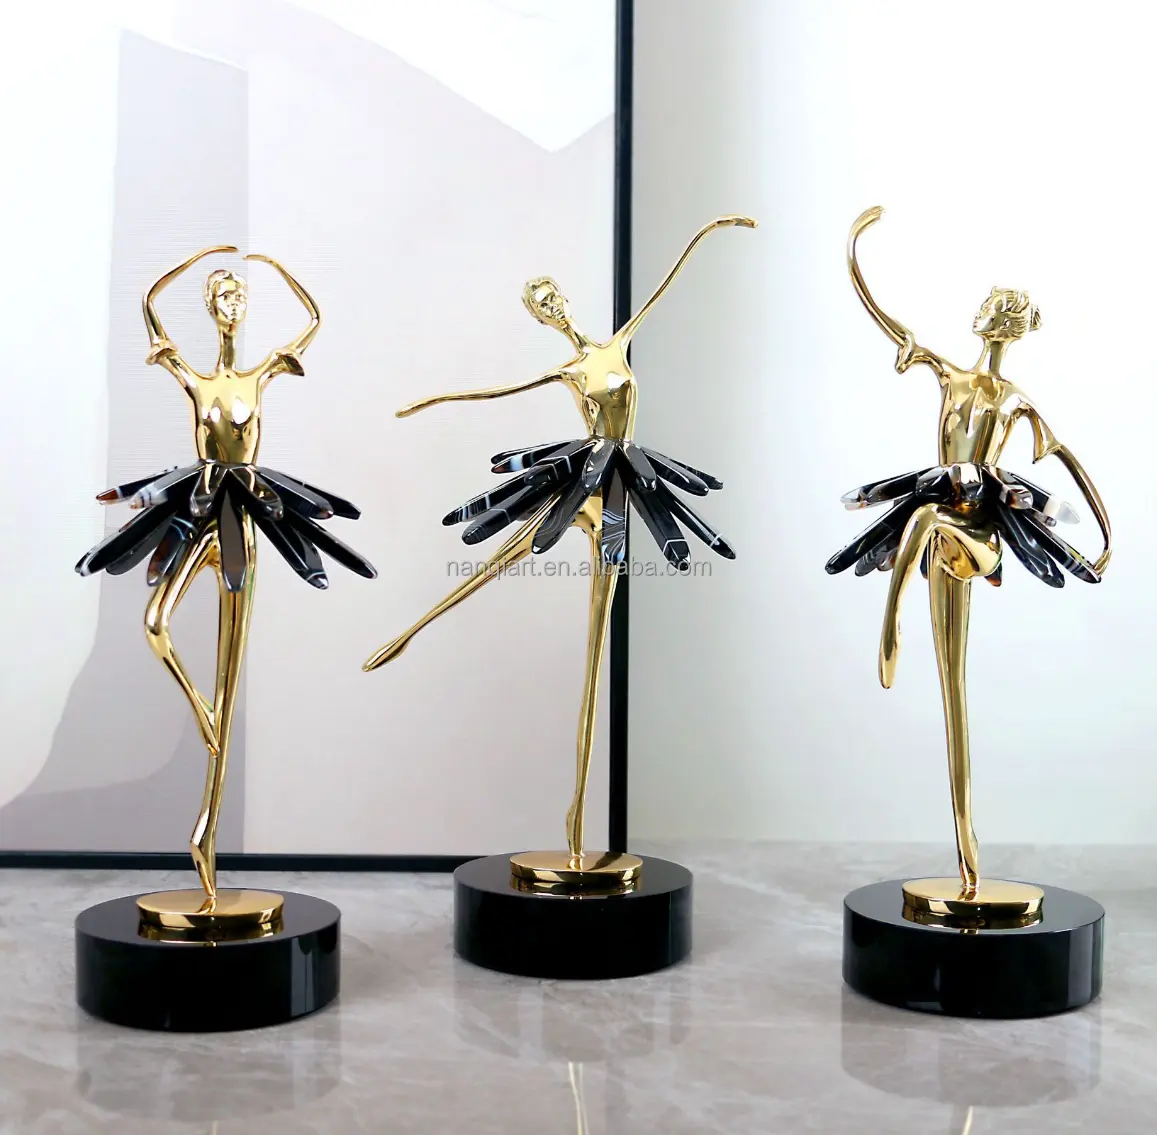 Promotion fête d'anniversaire cadeau Art Collection ornement fait à la main petite Mini danse Ballet fille Figure Statue avec Base en marbre noir